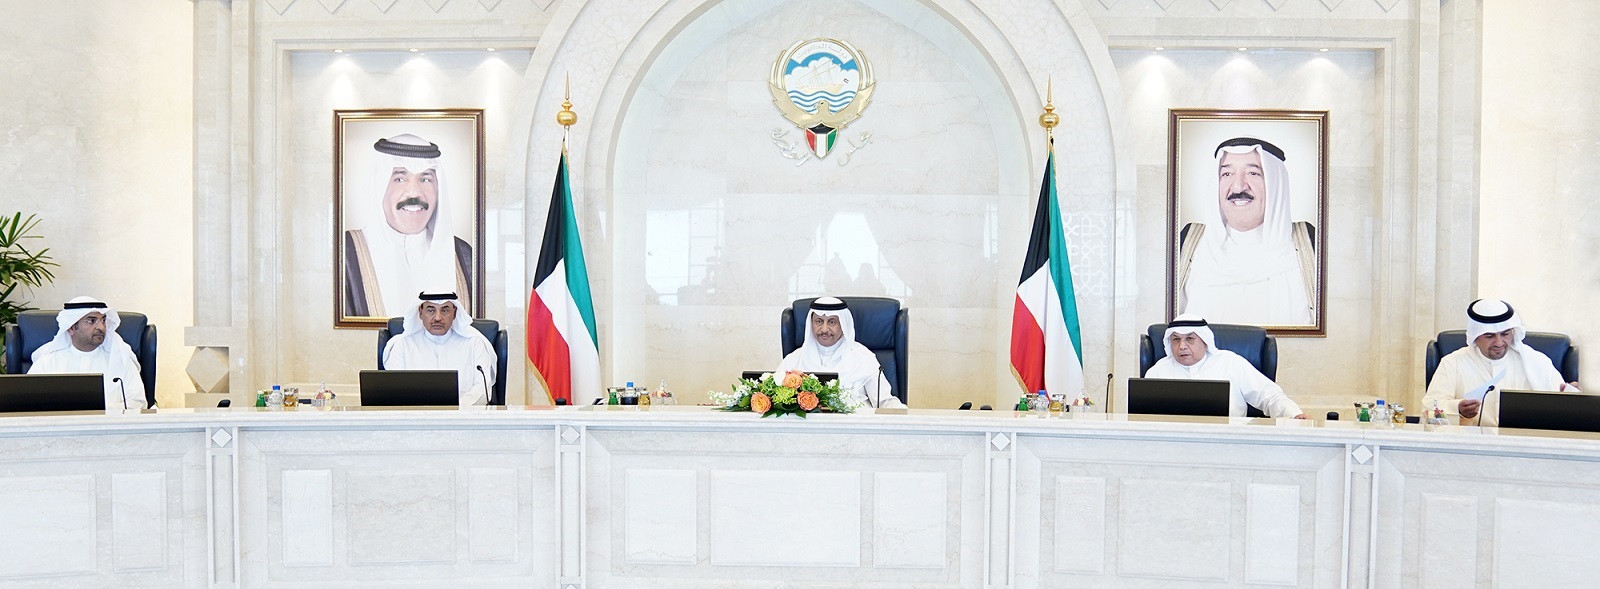 سمو الشيخ جابر المبارك الحمد الصباح رئيس مجلس الوزراء يترأس الاجتماع